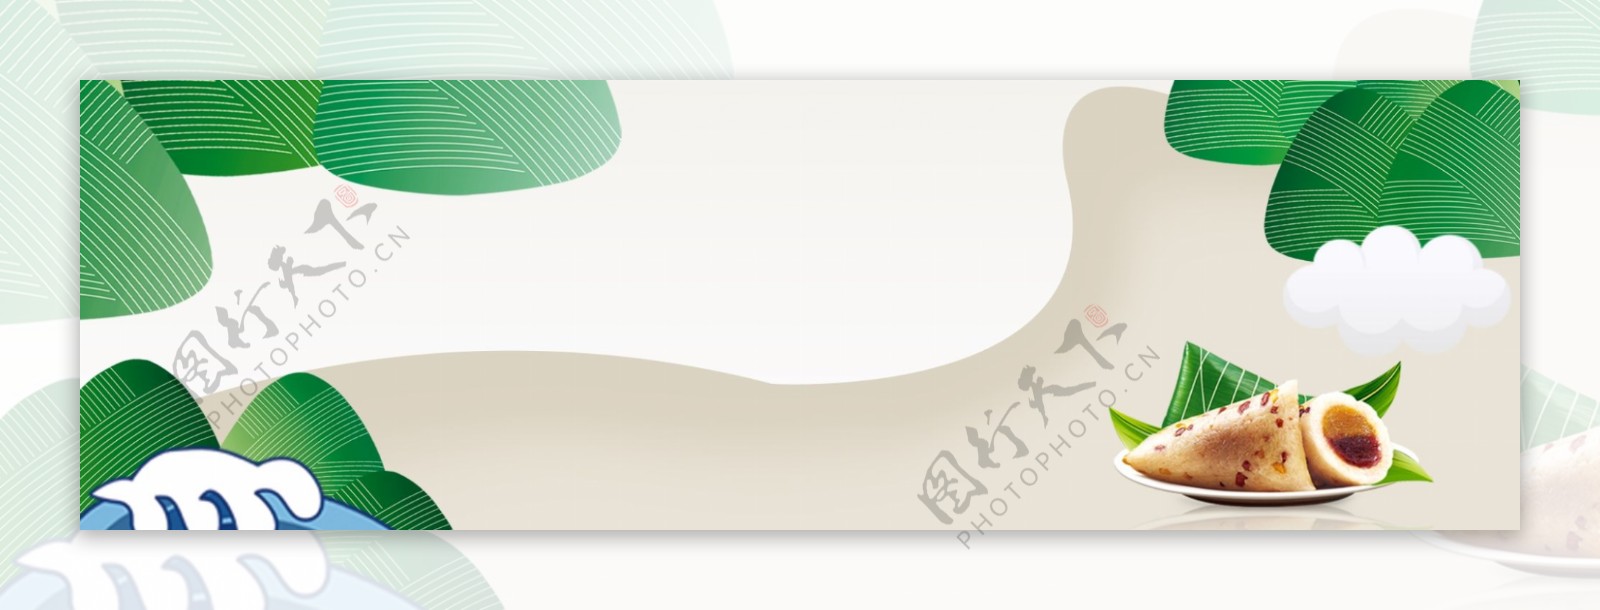 传统端午节banner背景图